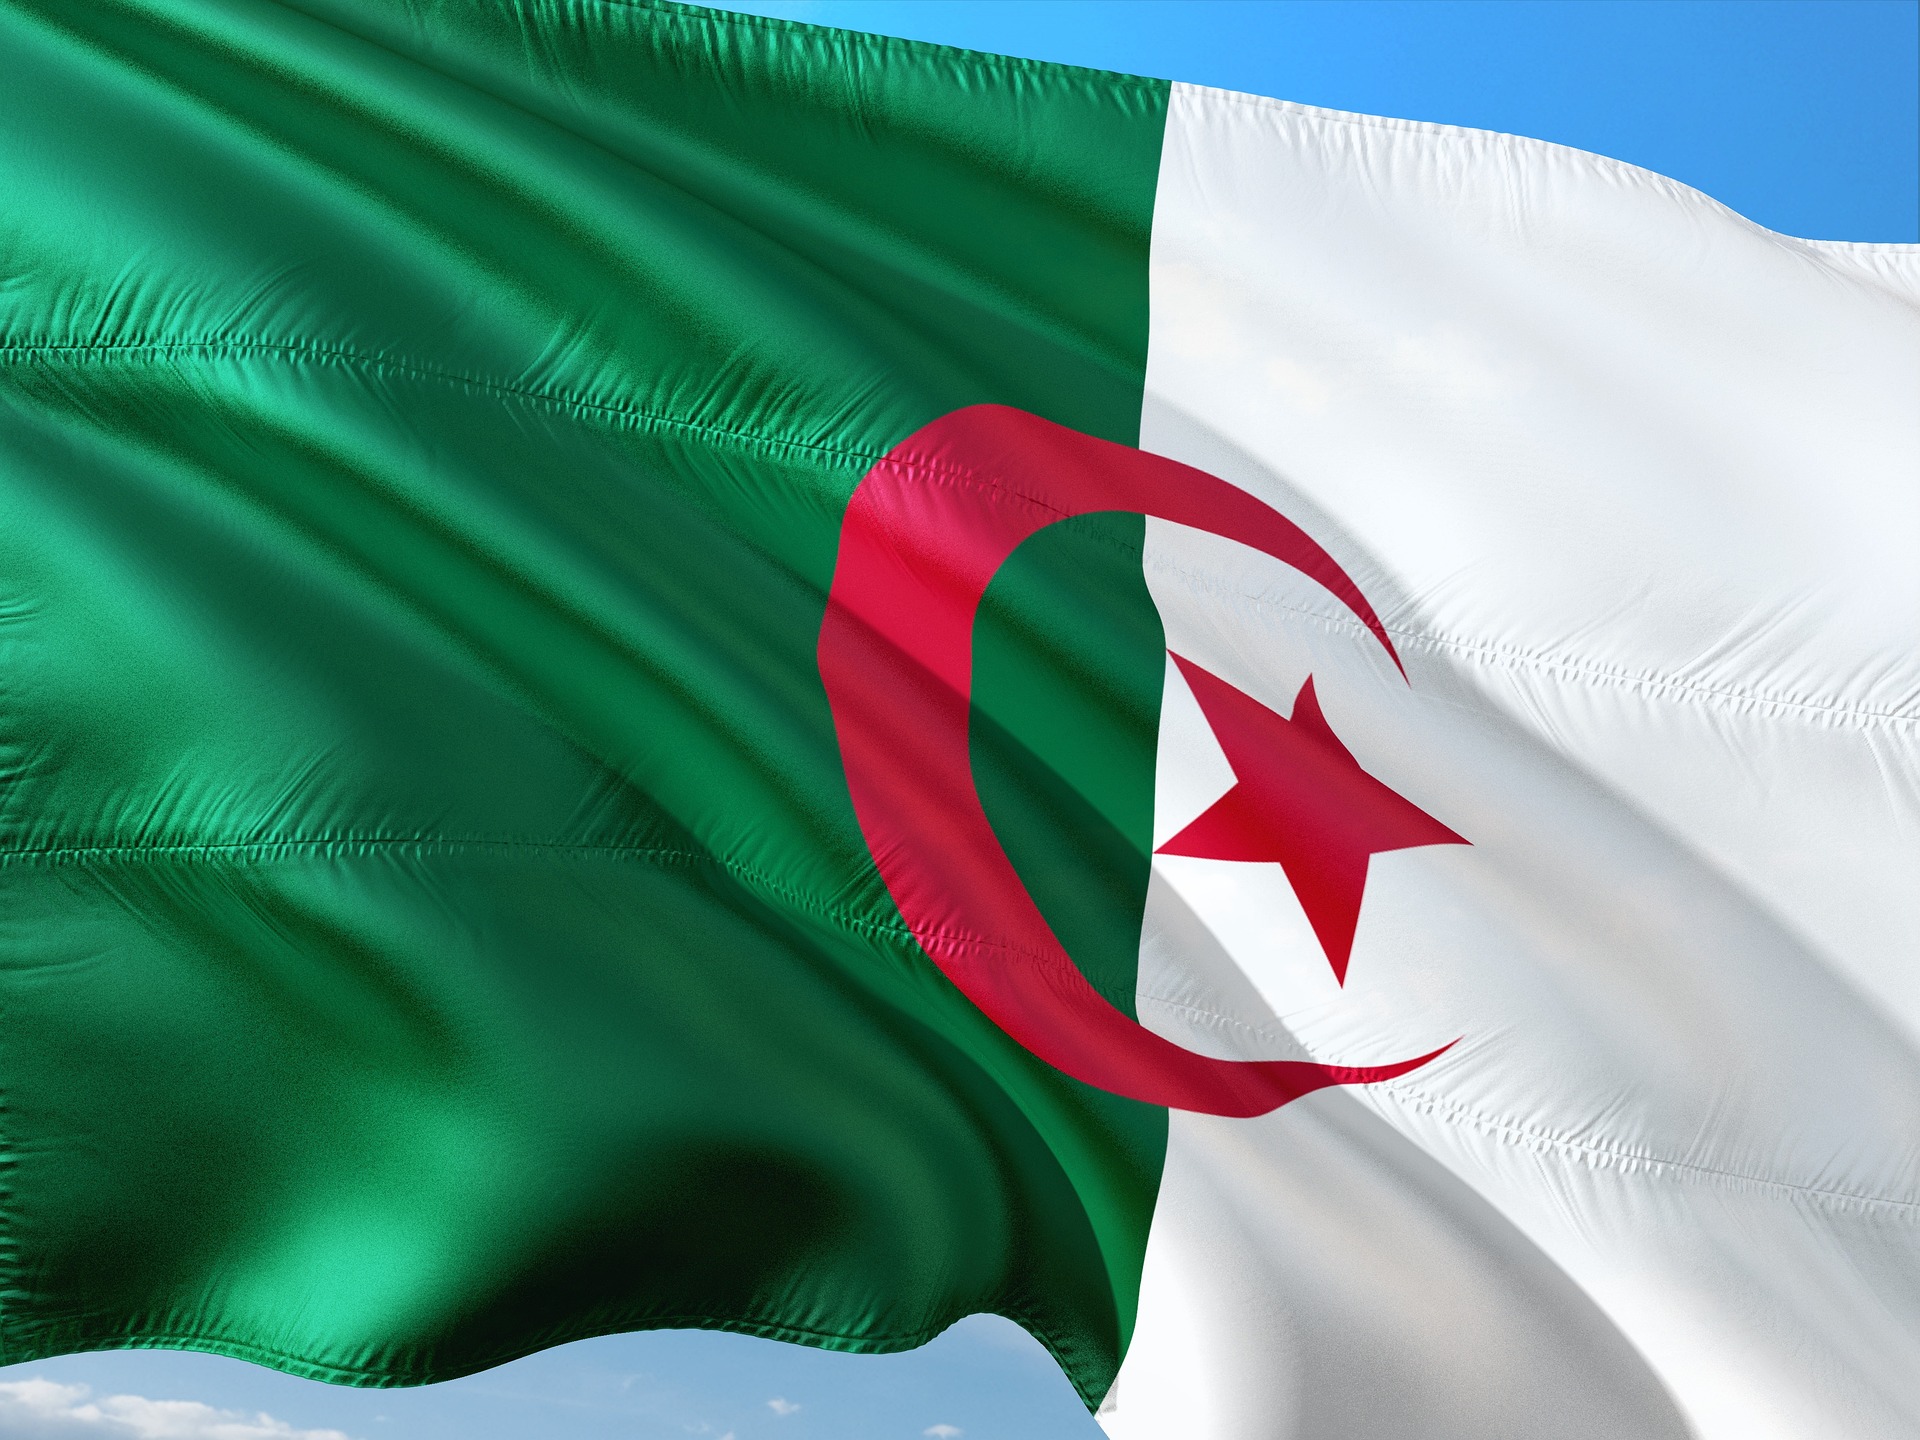 Algeria, nuove opportunità per l’acciaio italiano? – Come è cambiato e che sorprese potrebbe riservare il Paese che per anni è stato l’El Dorado del tondo nazionale